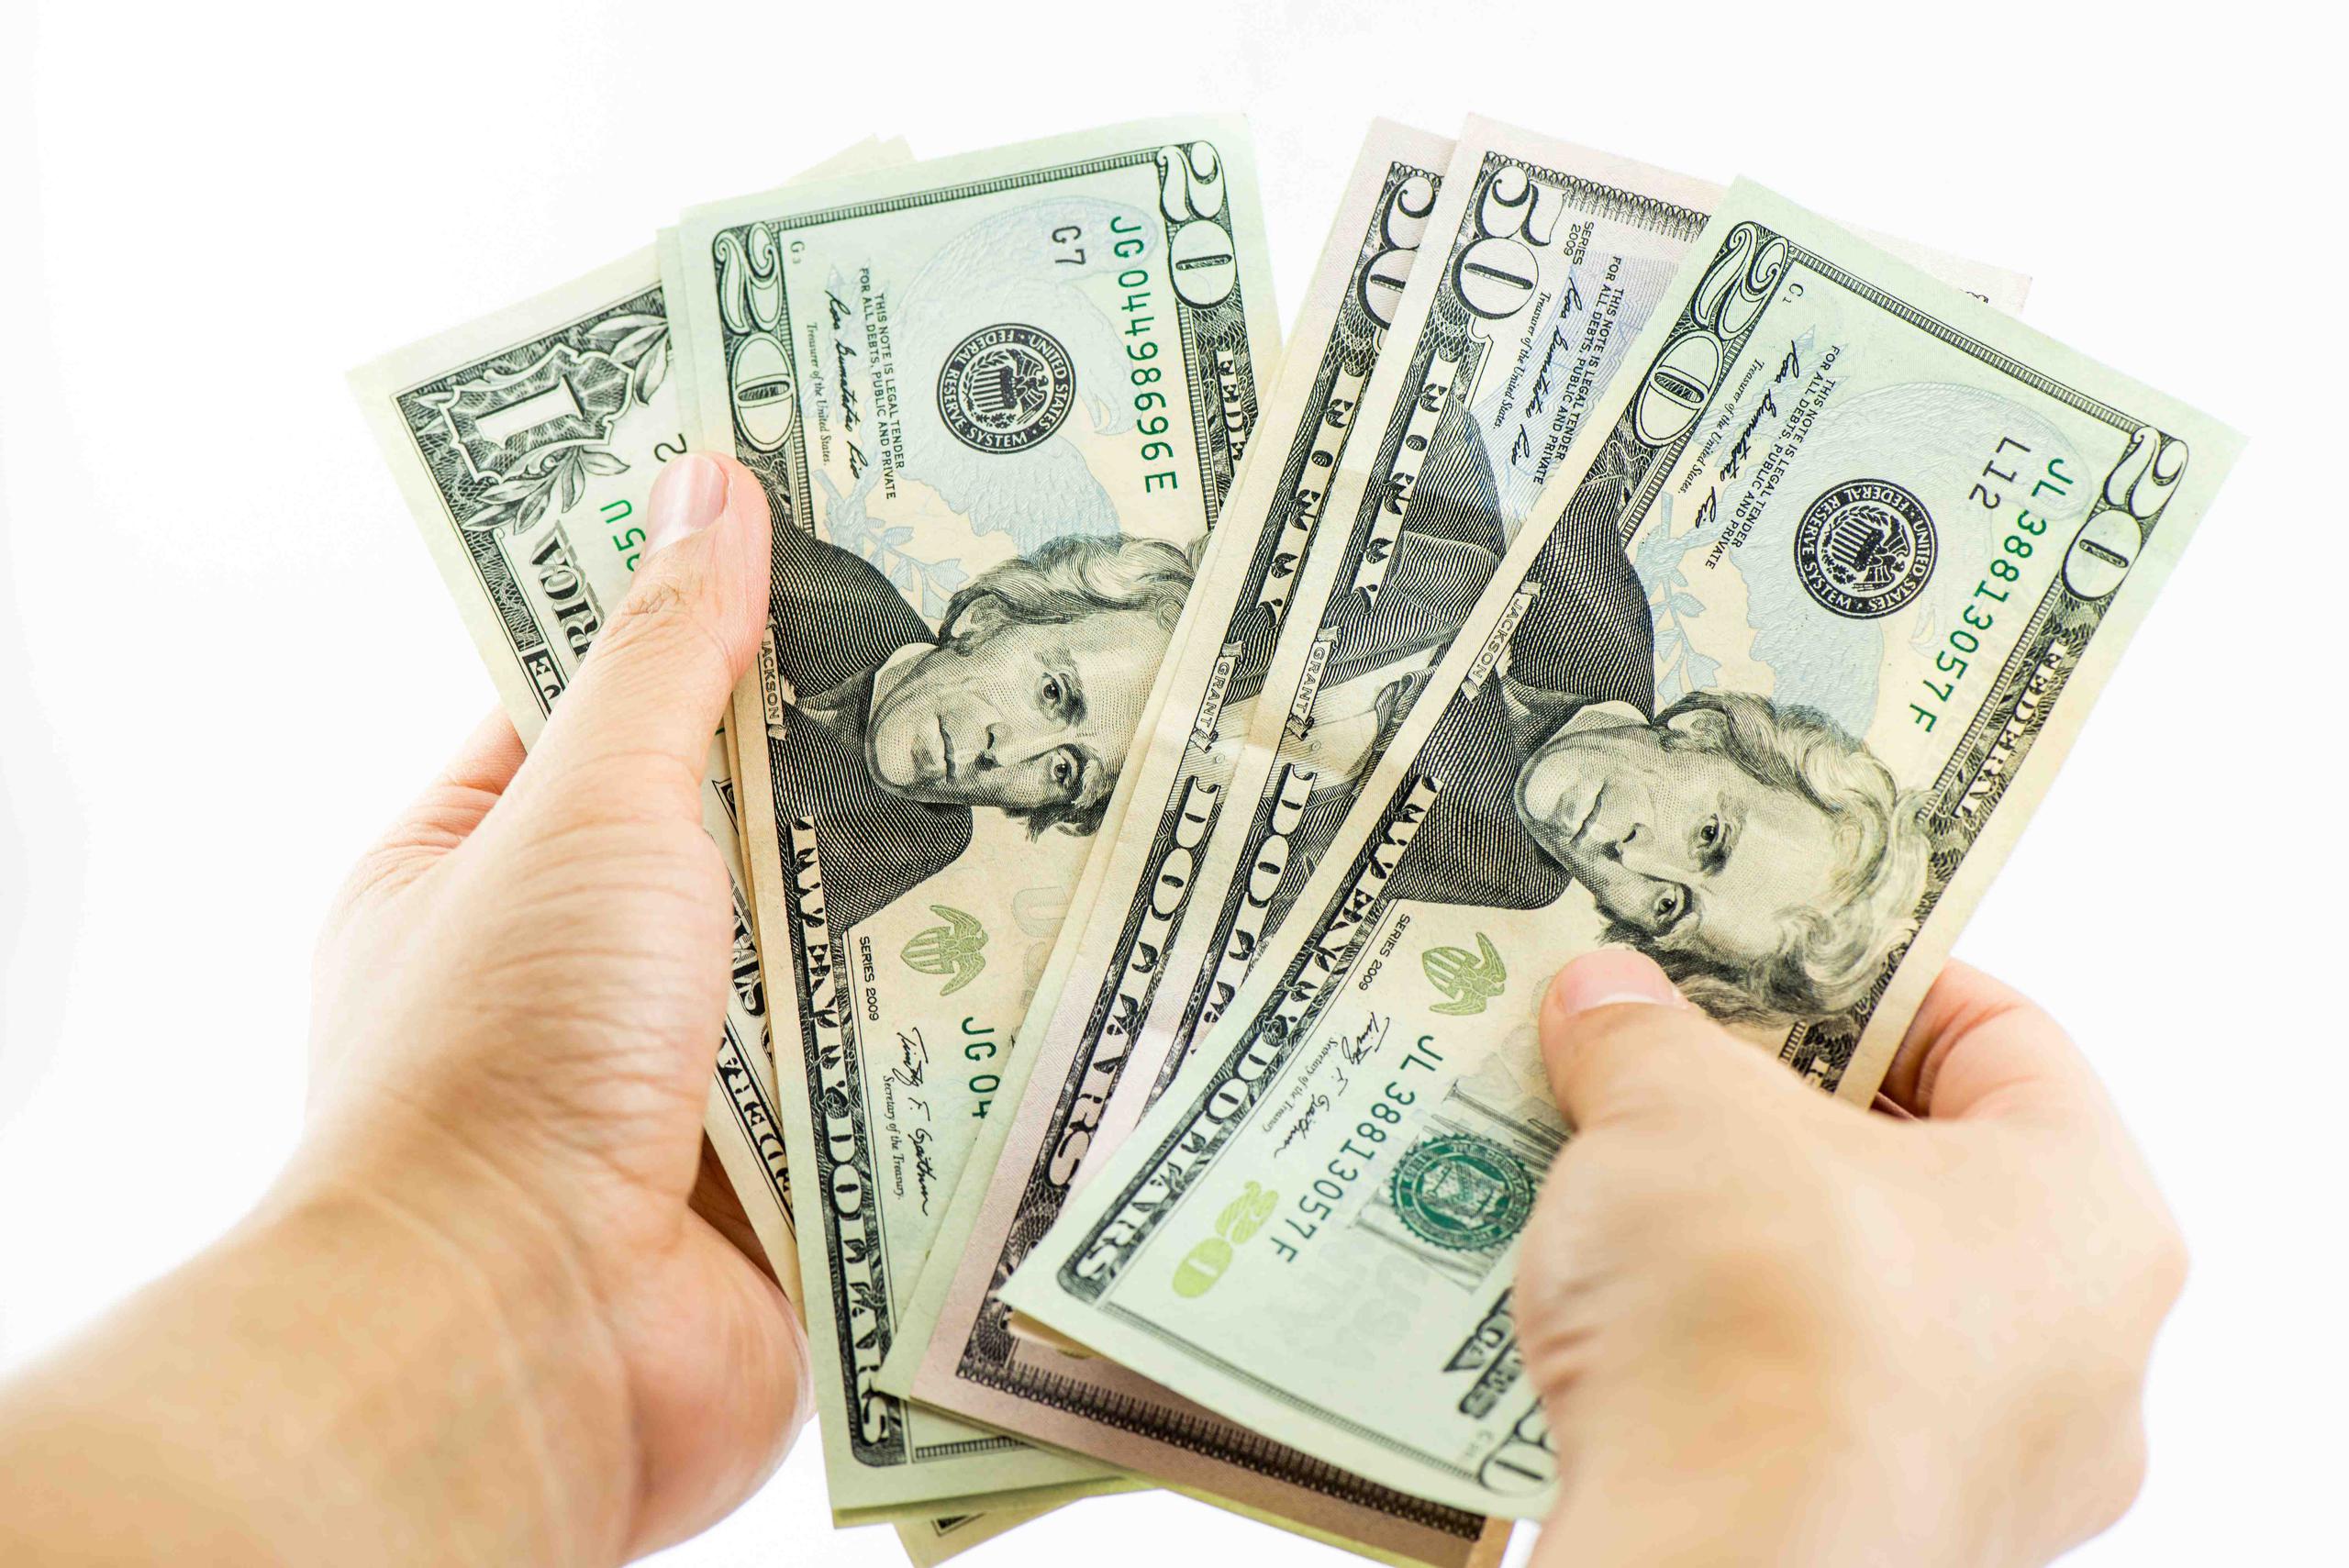 Unas 804,000 familias han recibido el dinero del estímulo económico federal, según Hacienda. (Shutterstock)